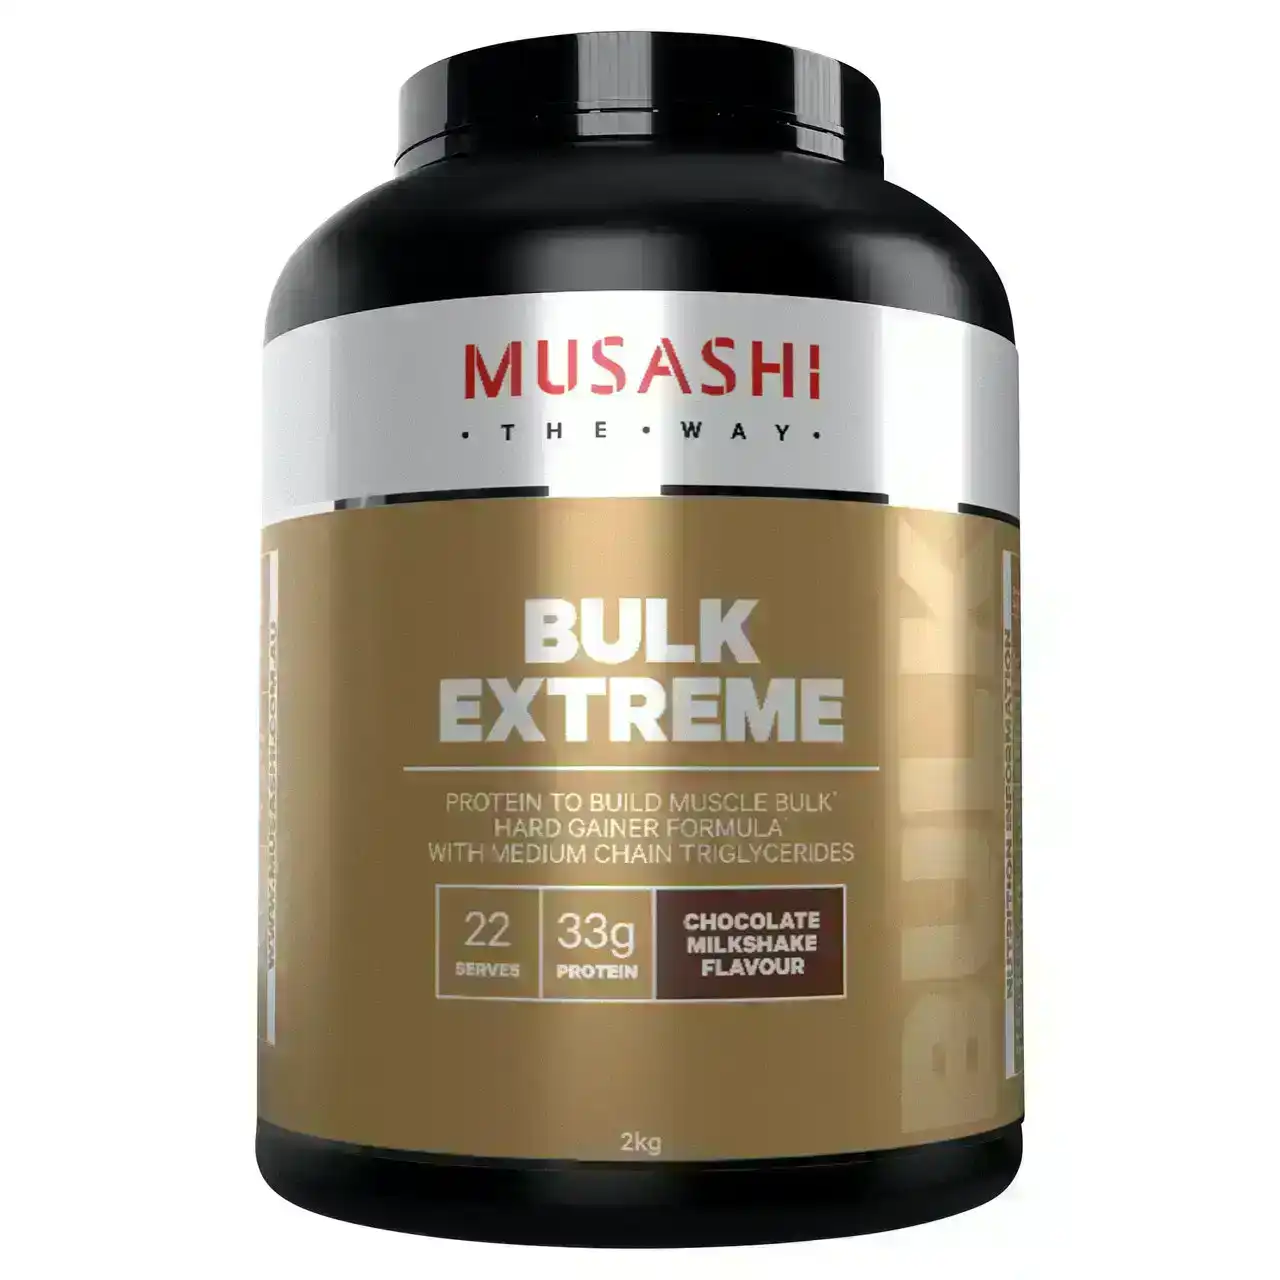 Musashi Bulk Extreme Chocolate Milkshake 2kg